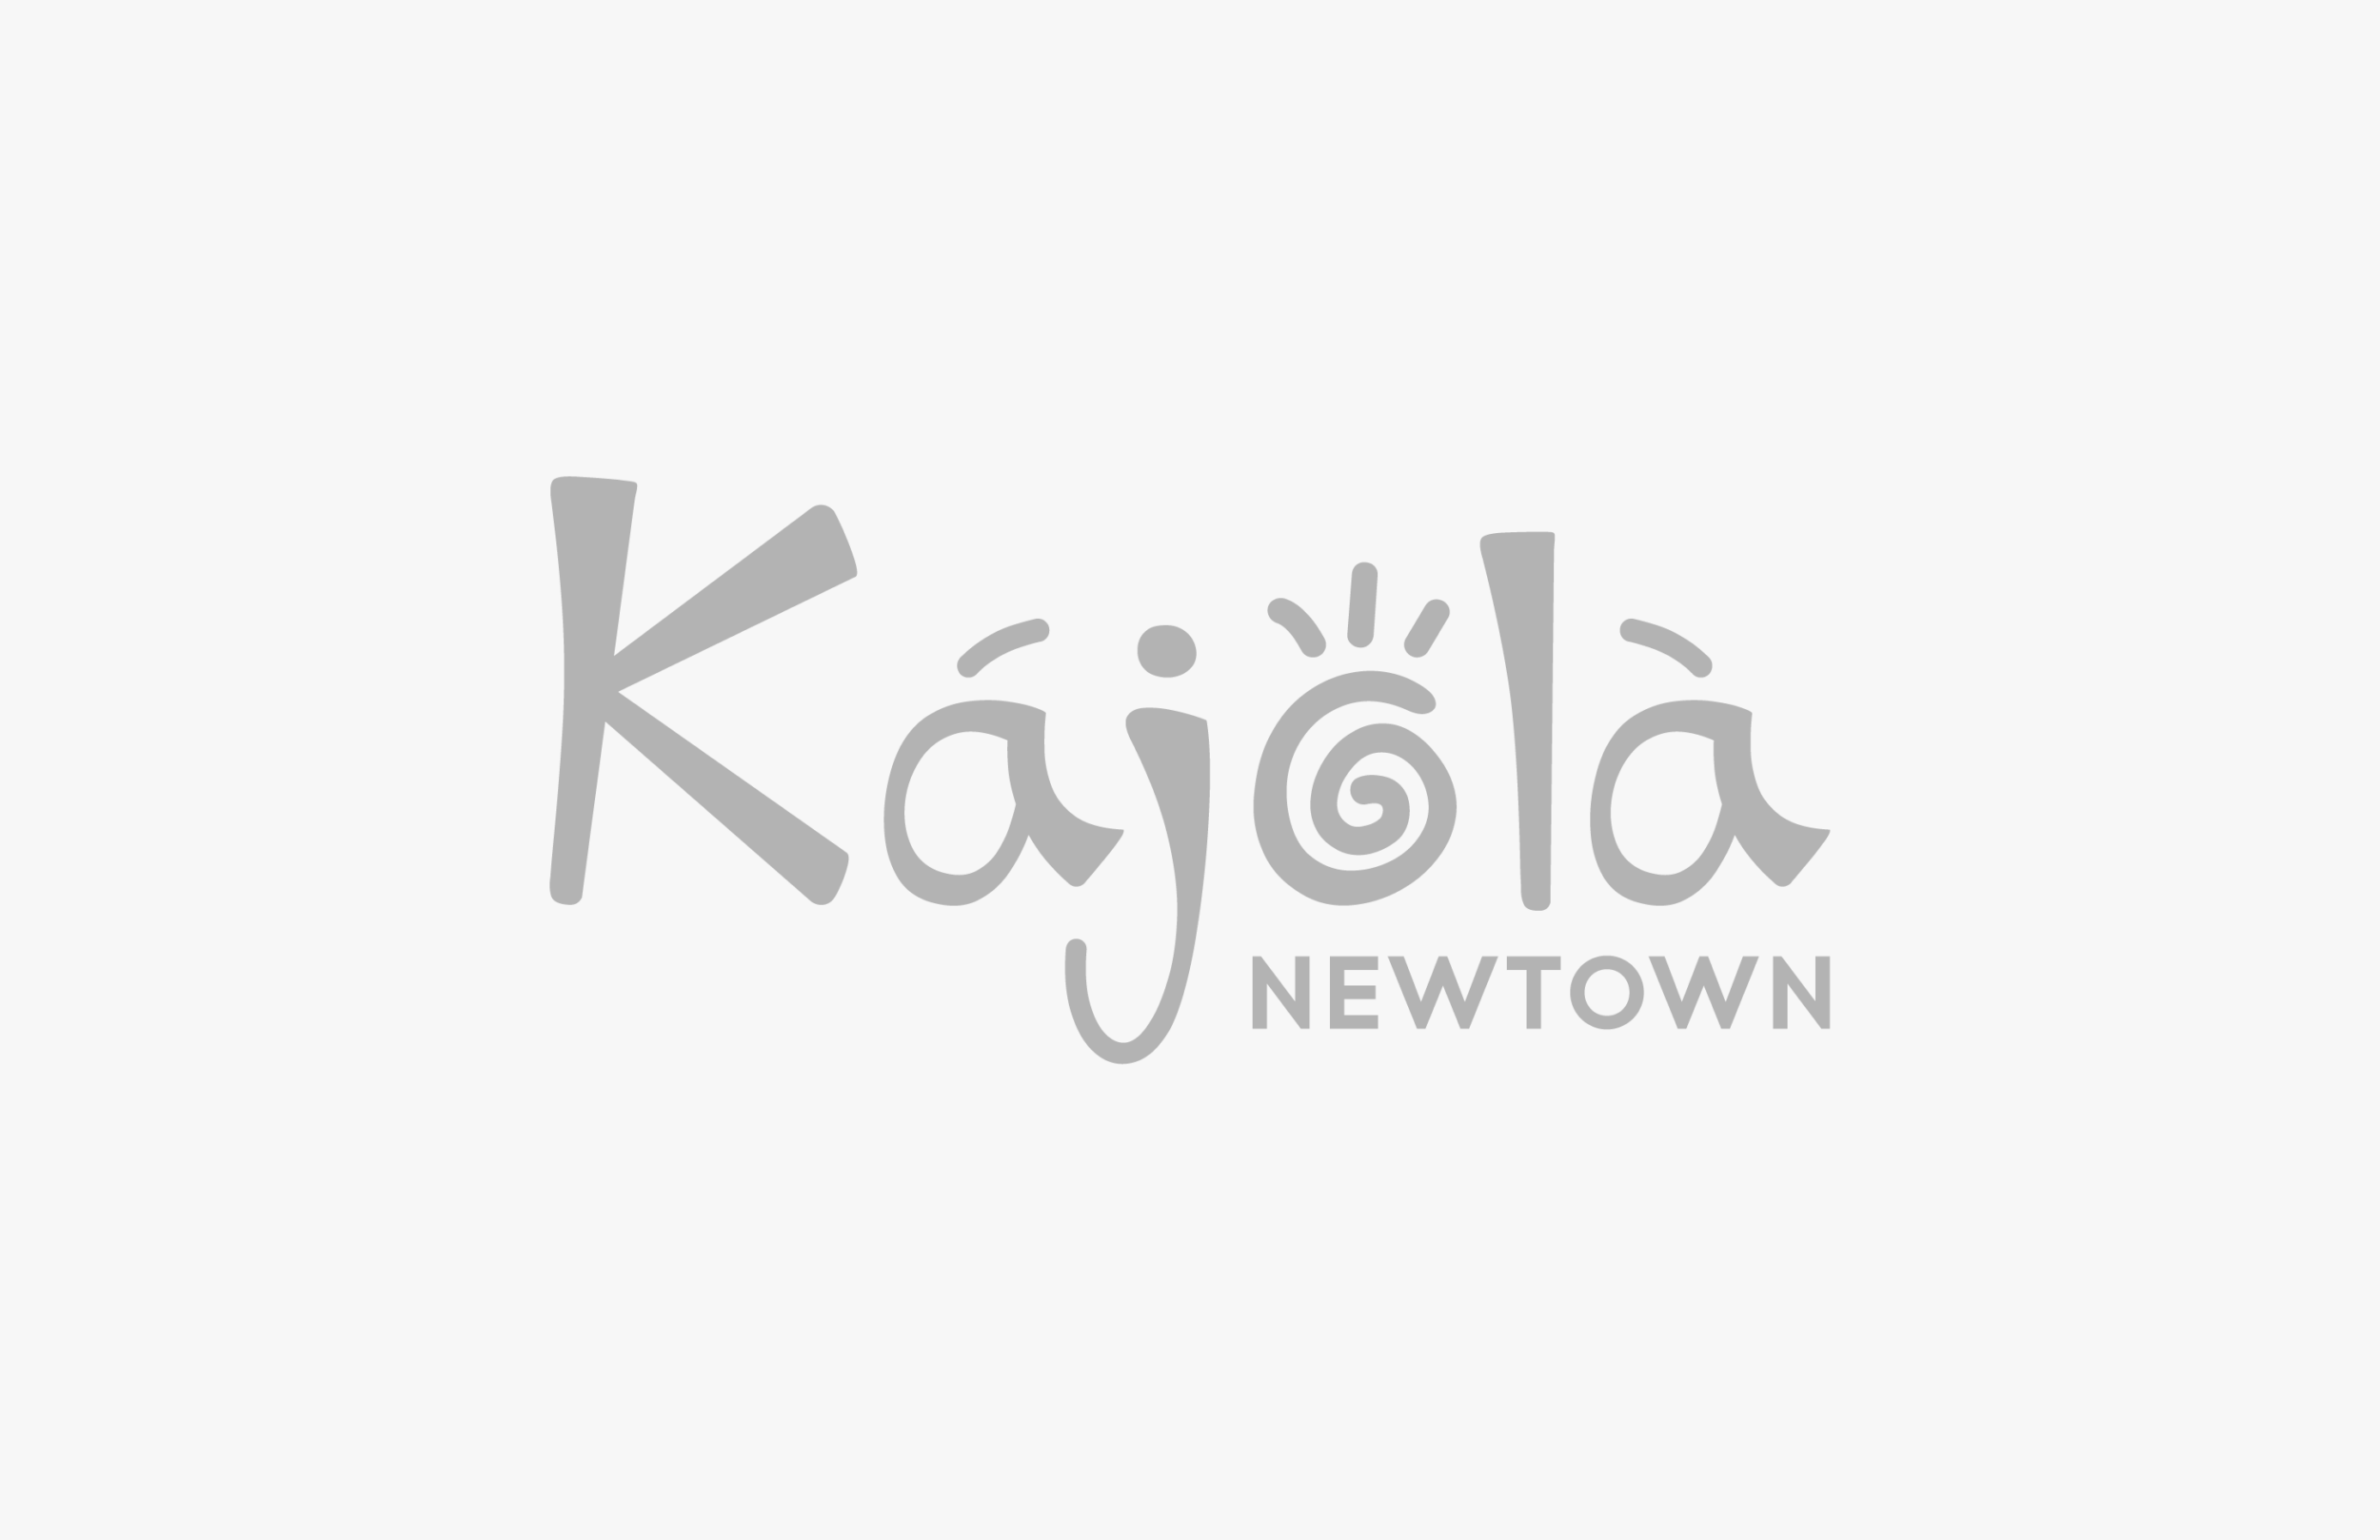 Kajola-Logos-02